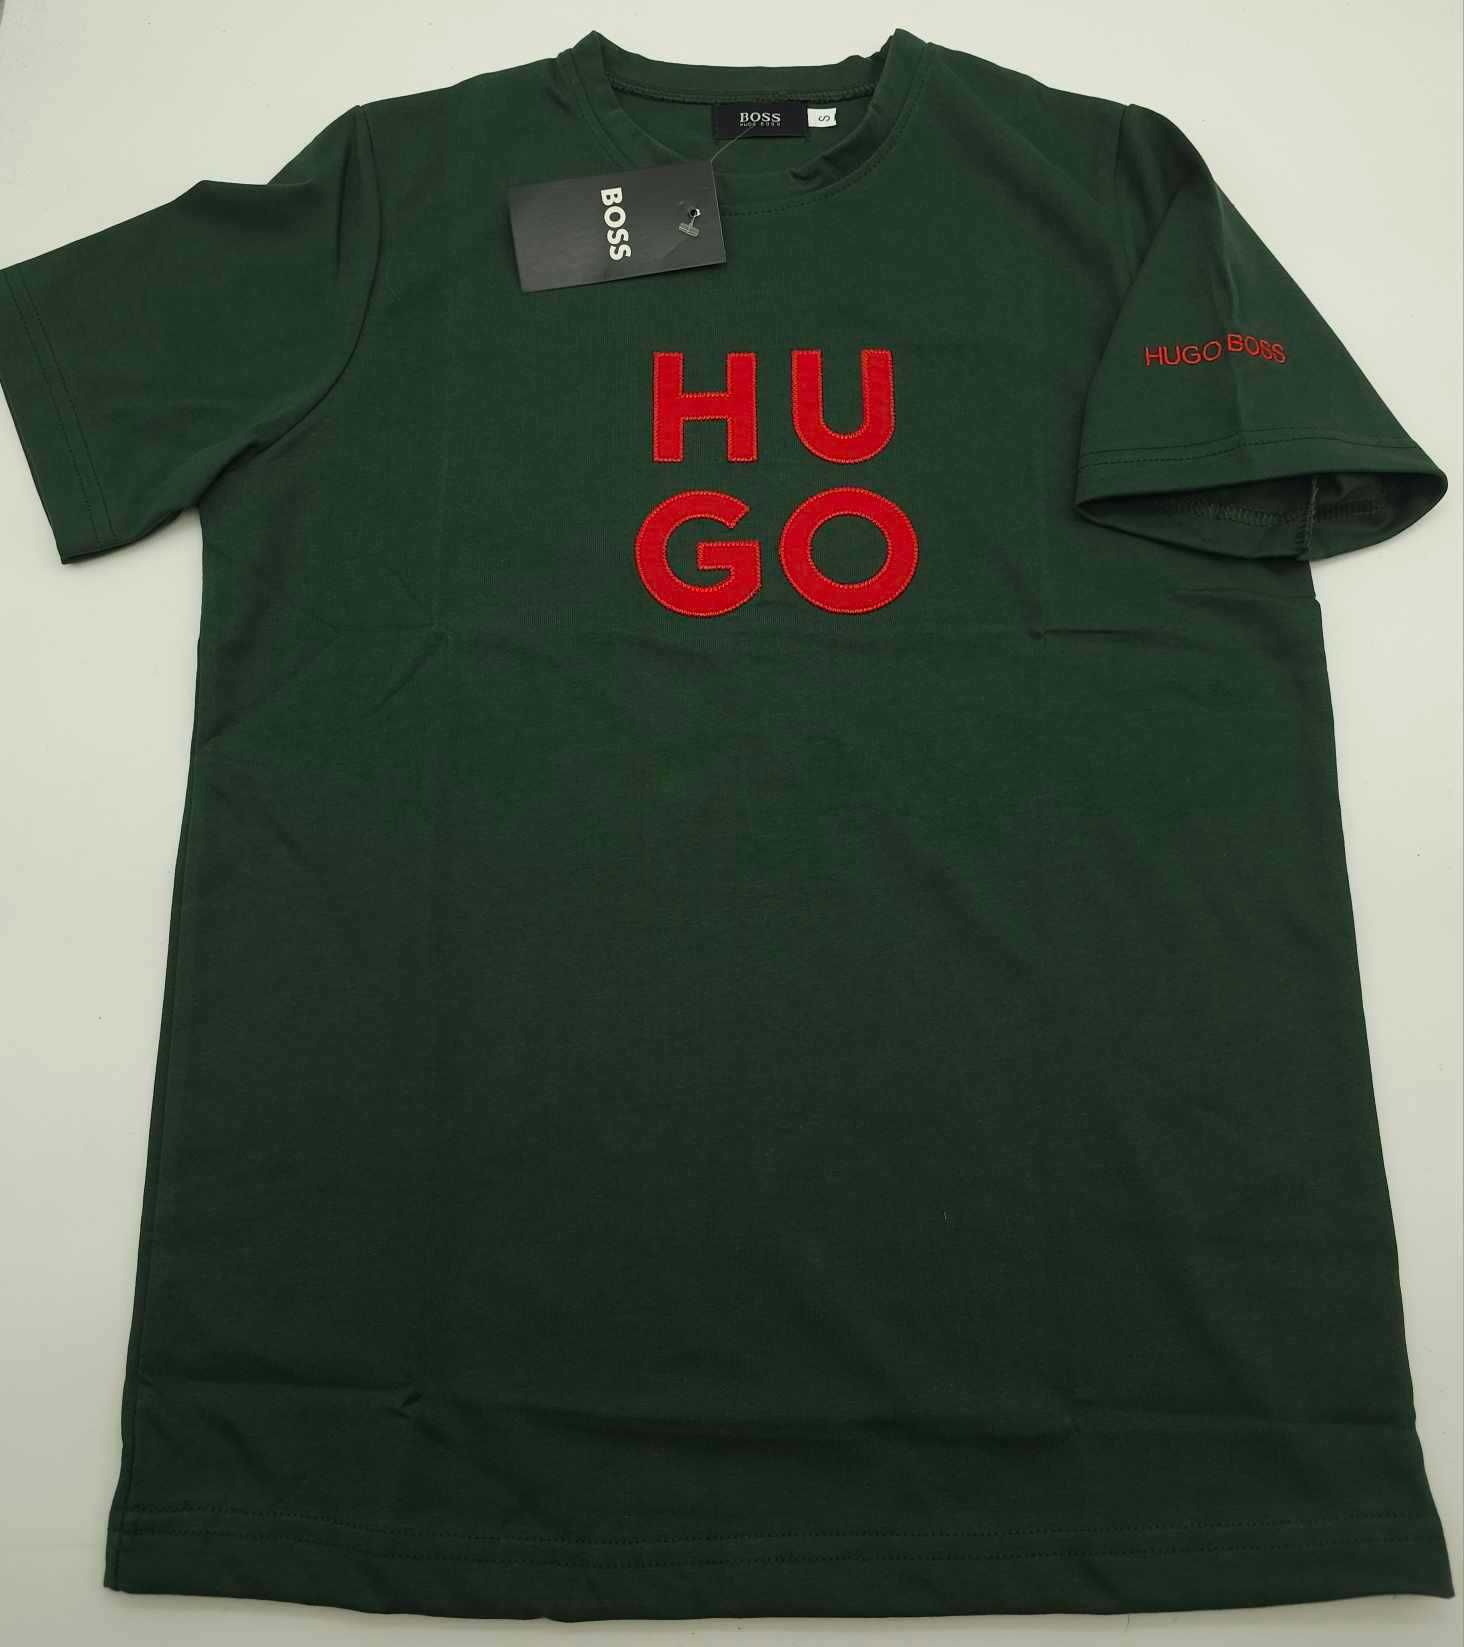 T-shirt nova coleção toda bordada verde